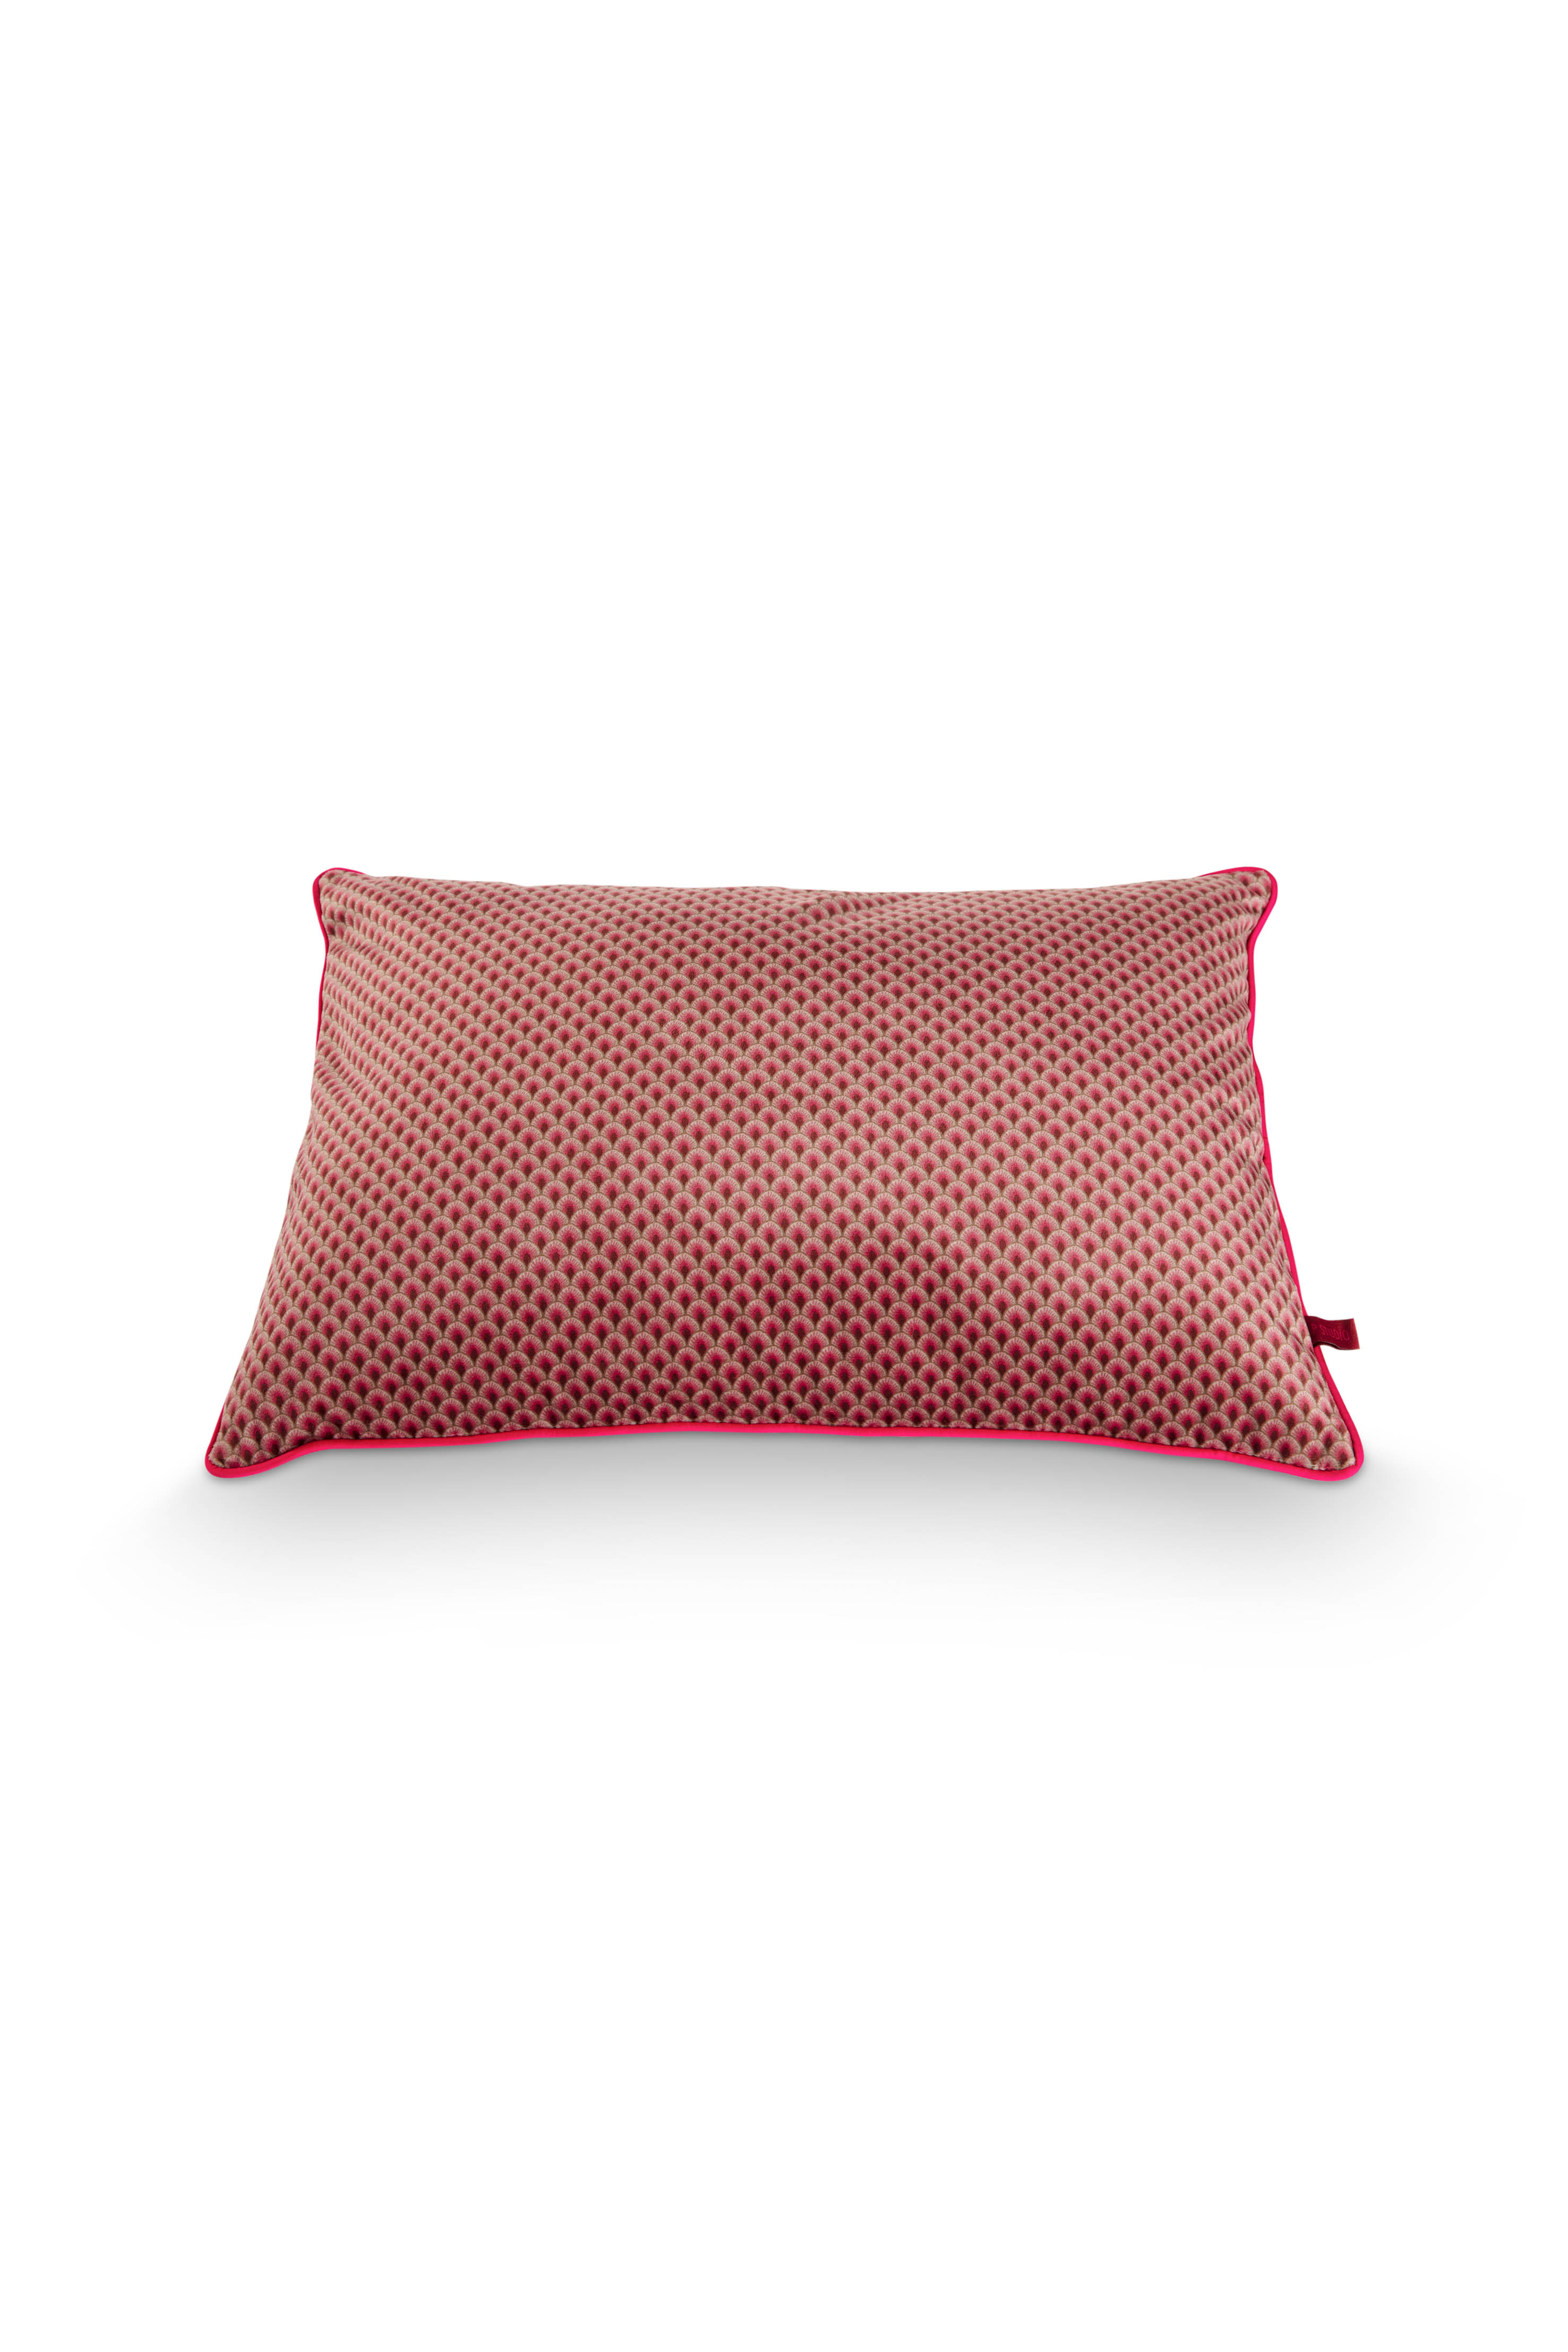 Cushion Suki Dark Pink 50x35cm Gift